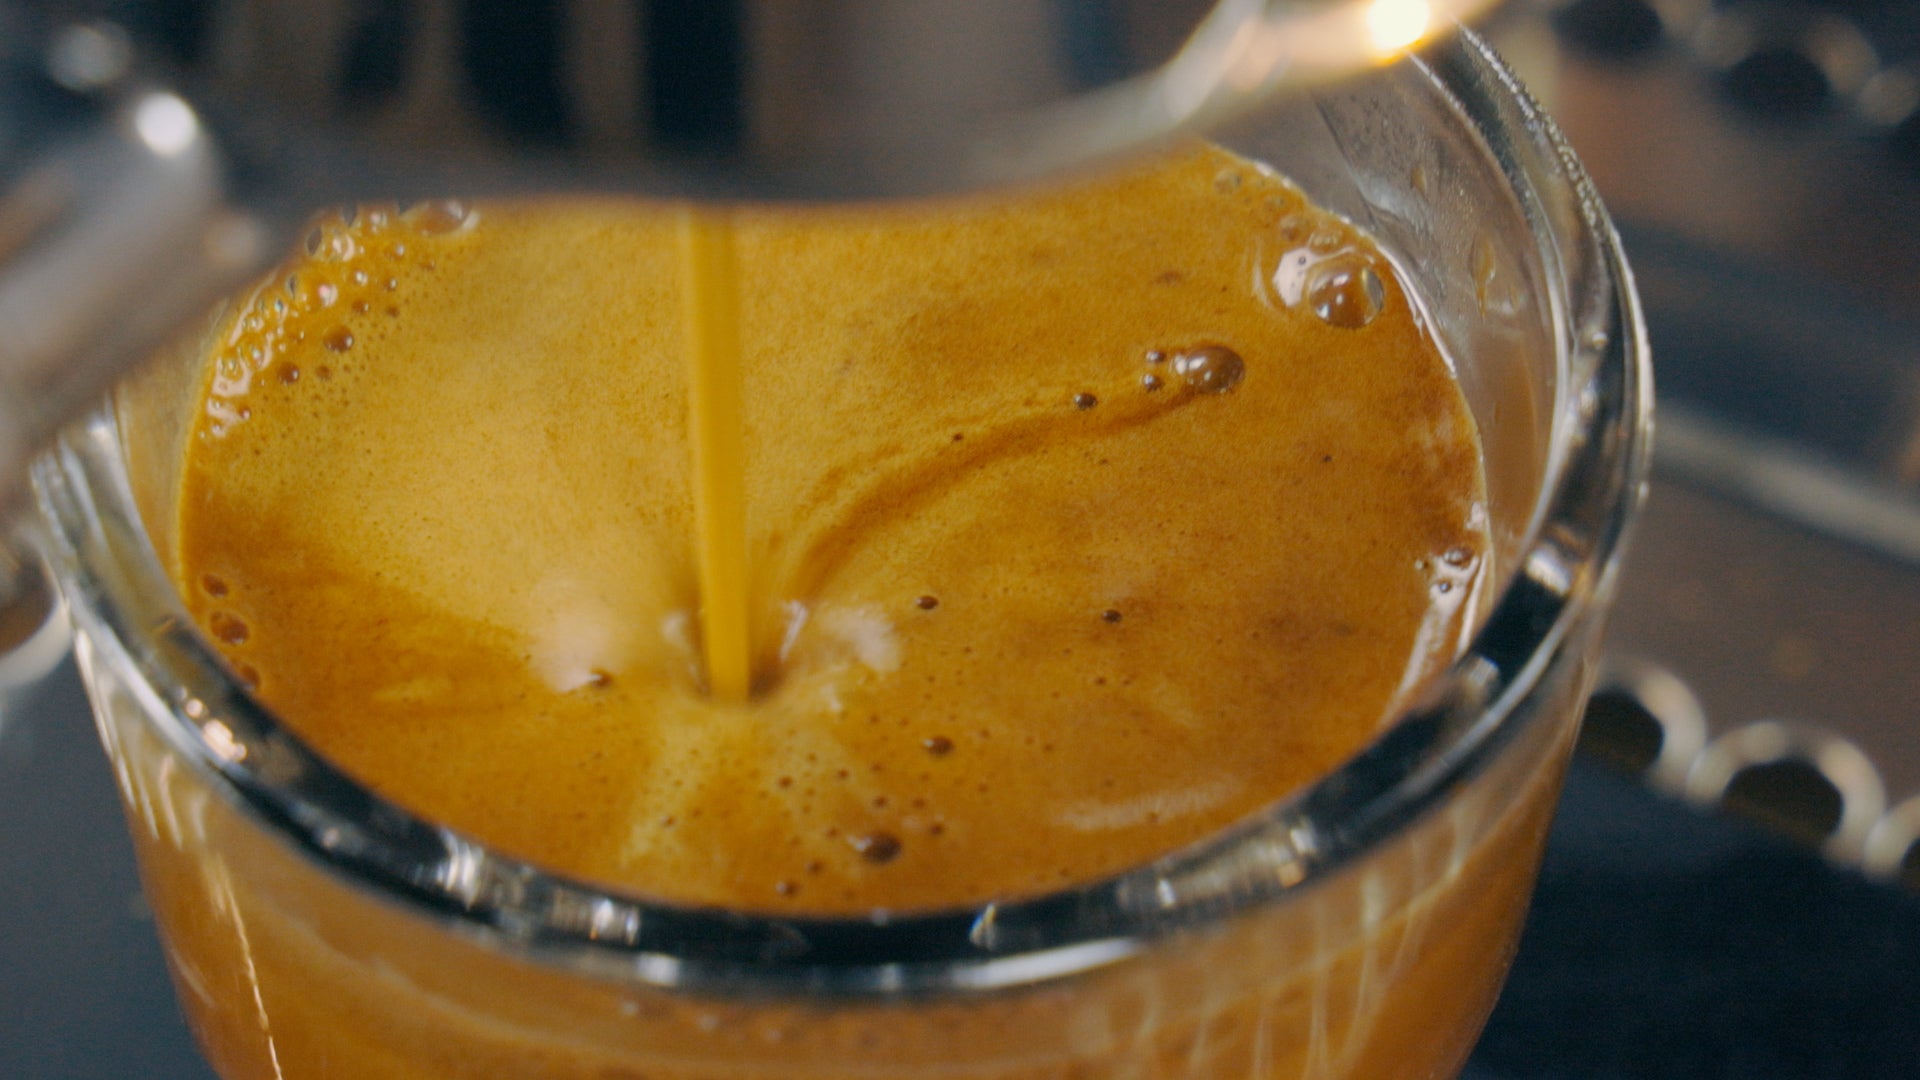 Crema trong Espresso và những điều chưa biết | PrimeCoffee